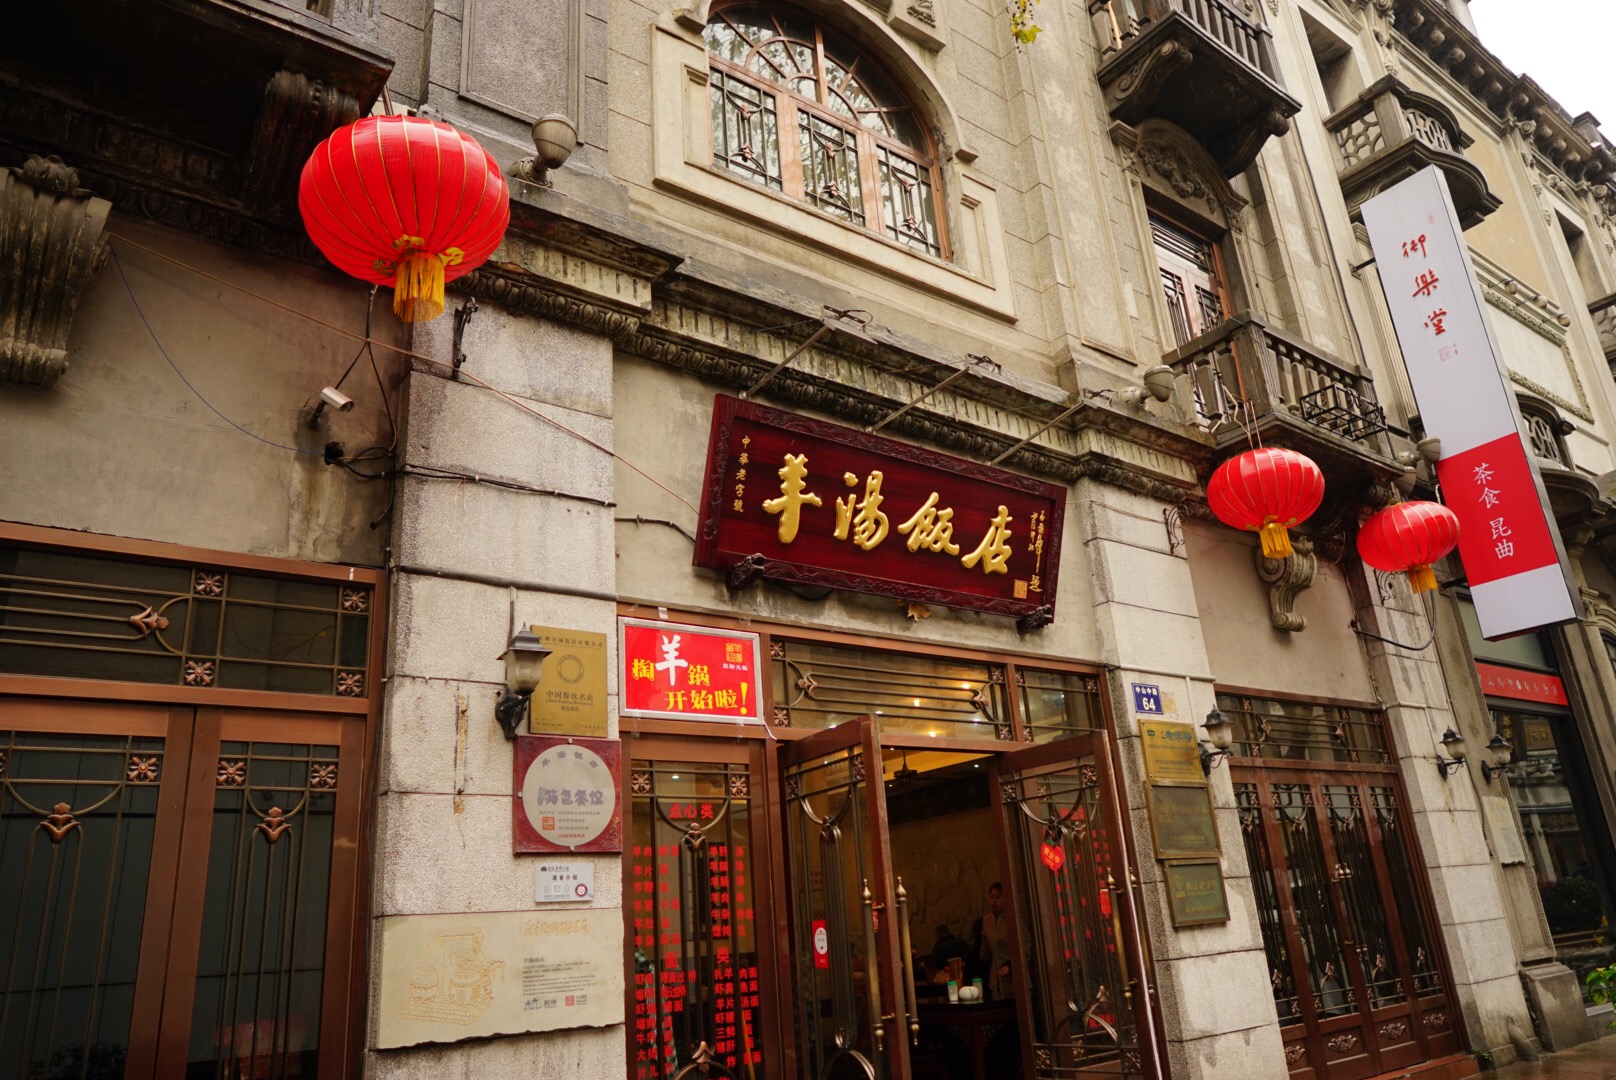 杭州の河坊街の羊肉レストラン「羊湯飯店」